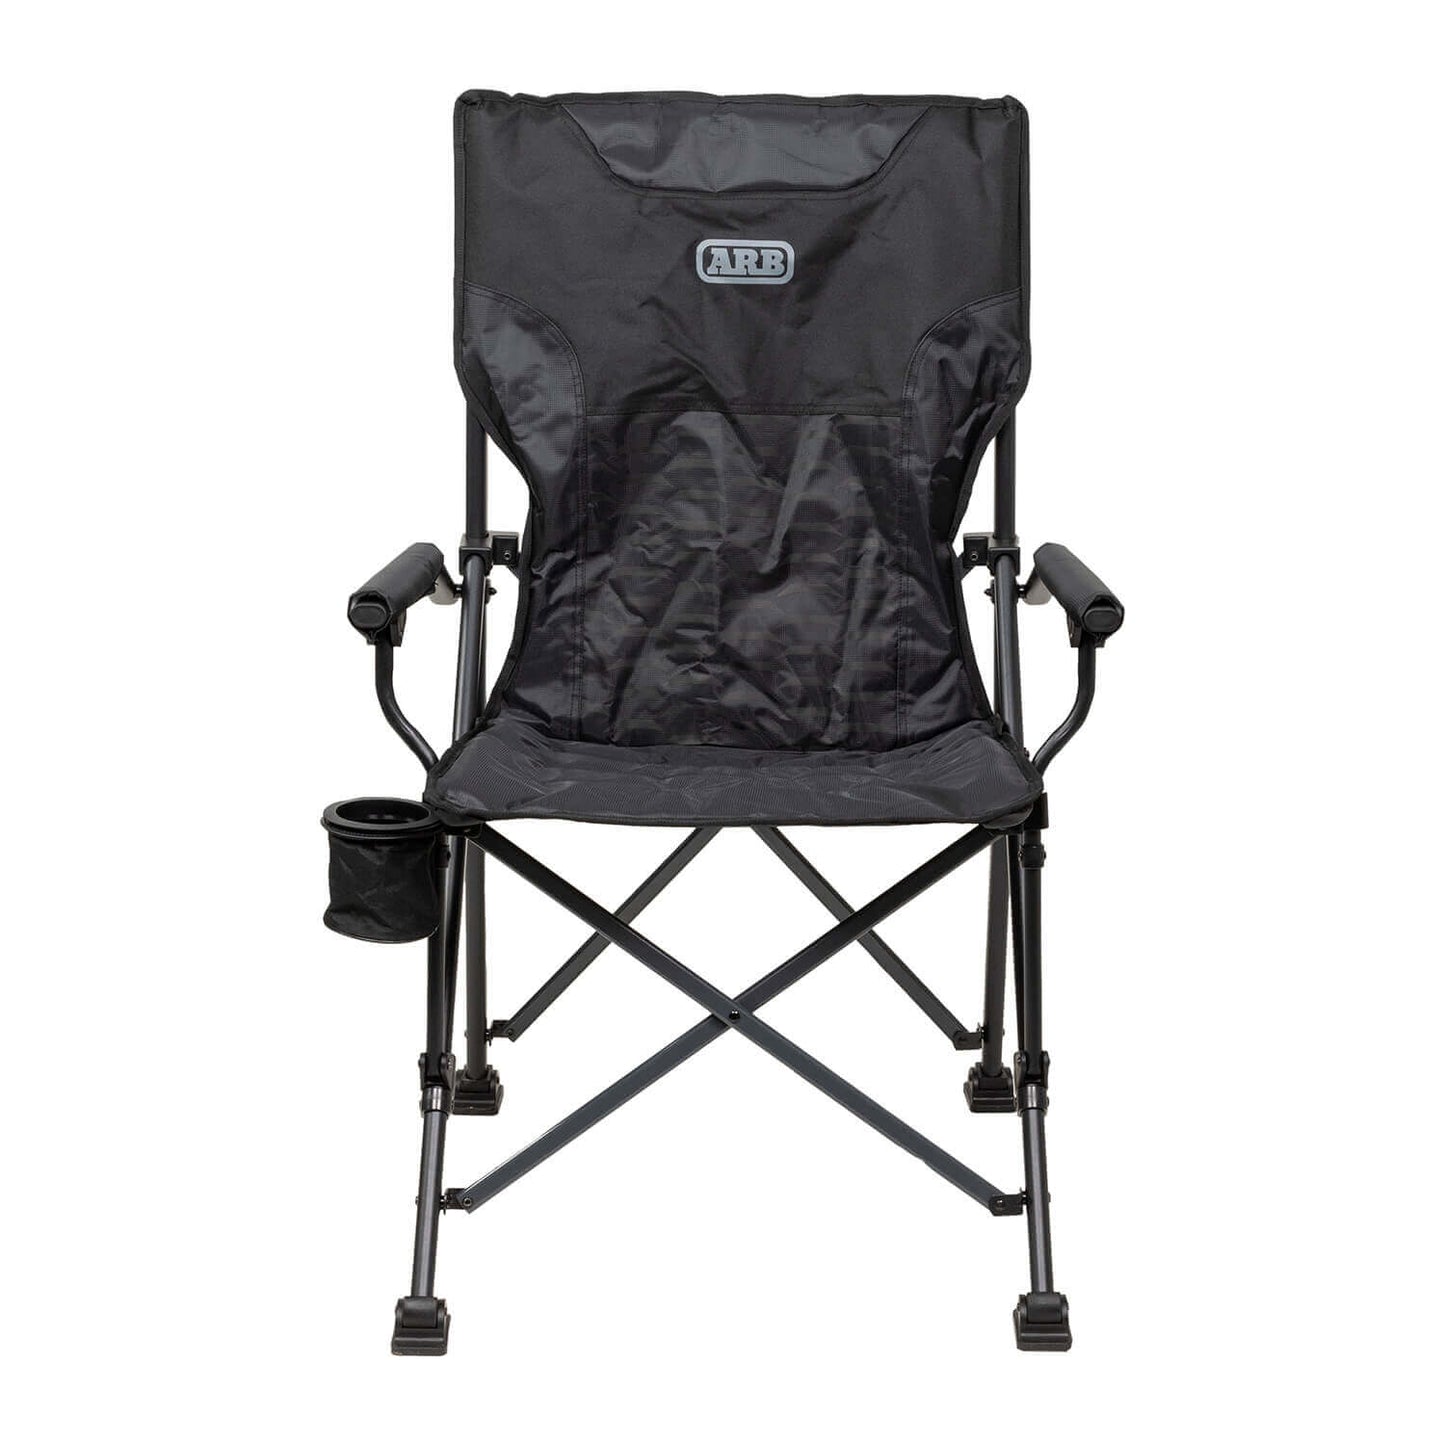 ARB - 10500151 - Base Camp Chair